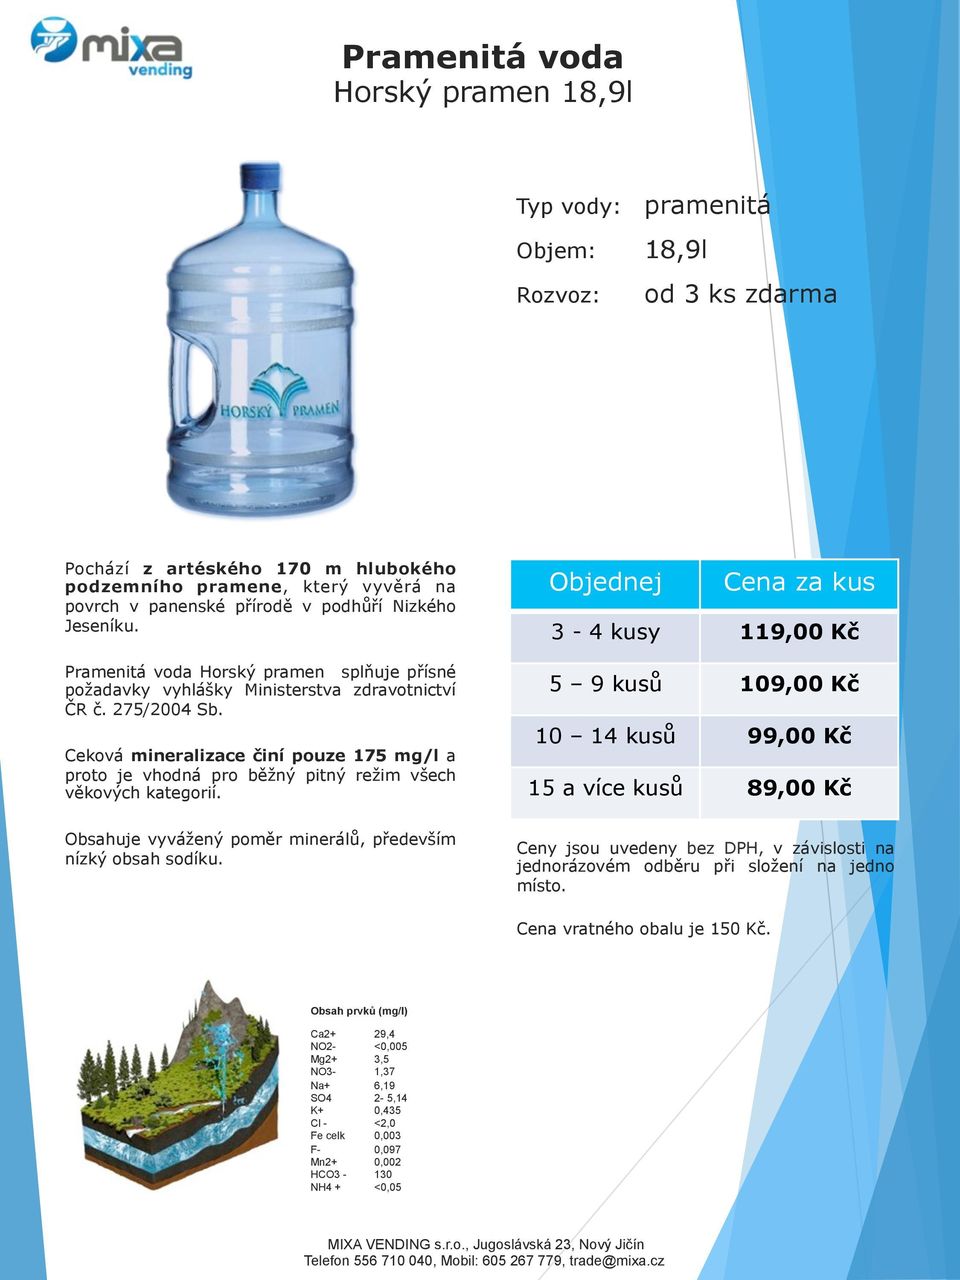 Ceková mineralizace činí pouze 175 mg/l a proto je vhodná pro běžný pitný režim všech věkových kategorií.